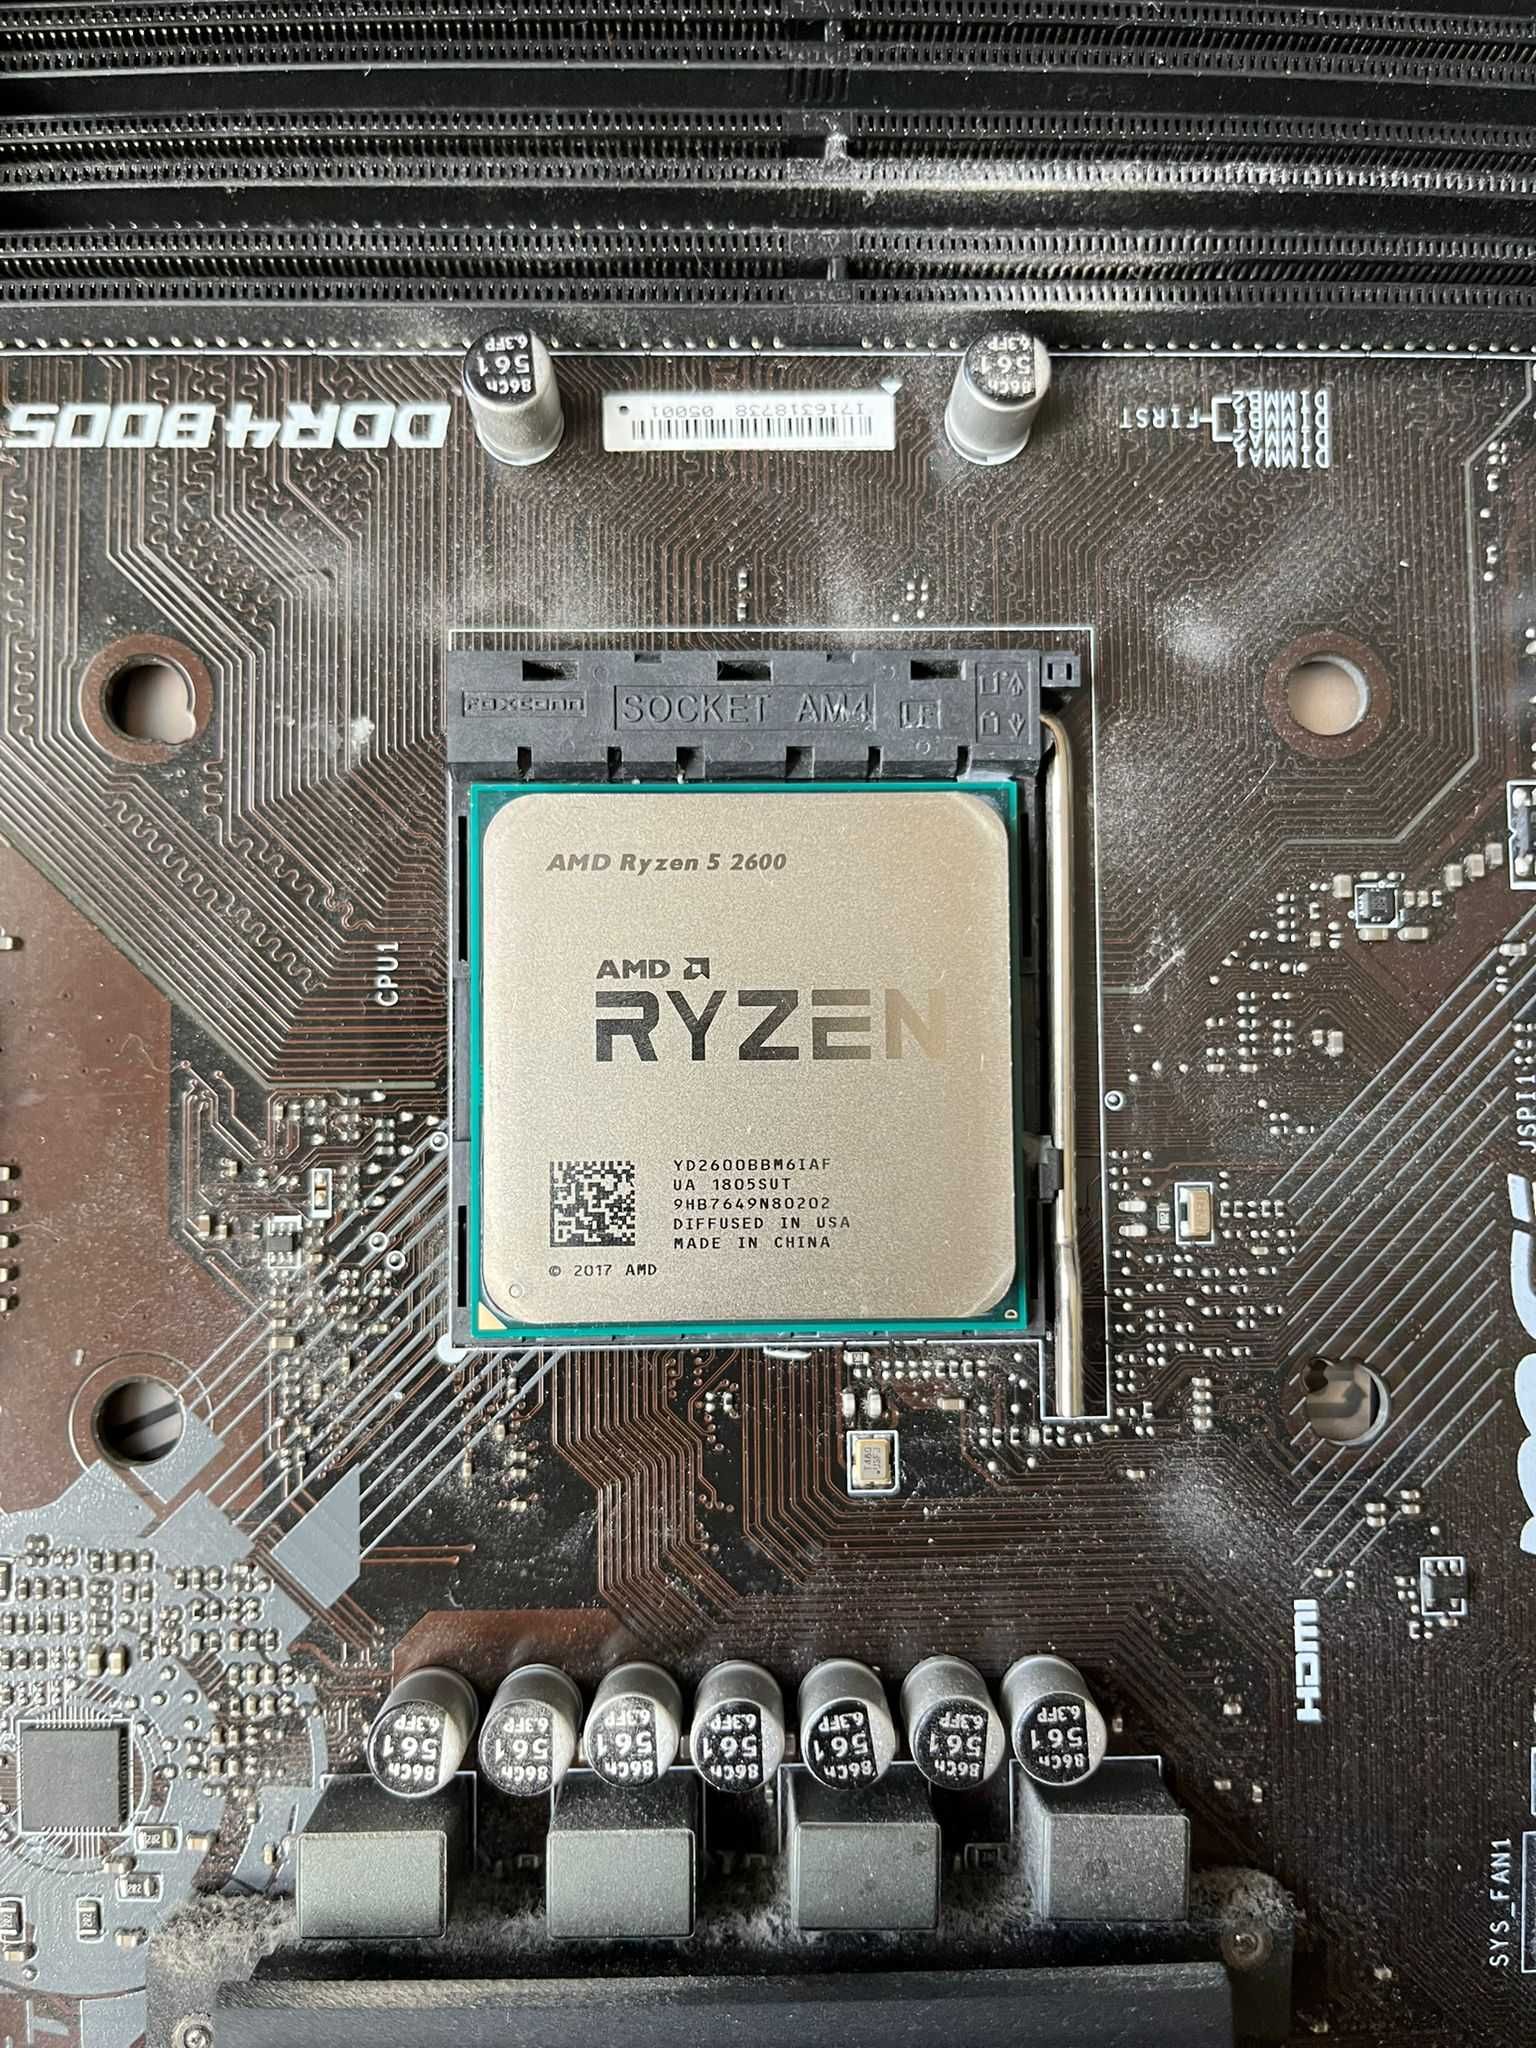 Procesor AMD Ryzen 5 2600 + Wentylator/Chłodzenie